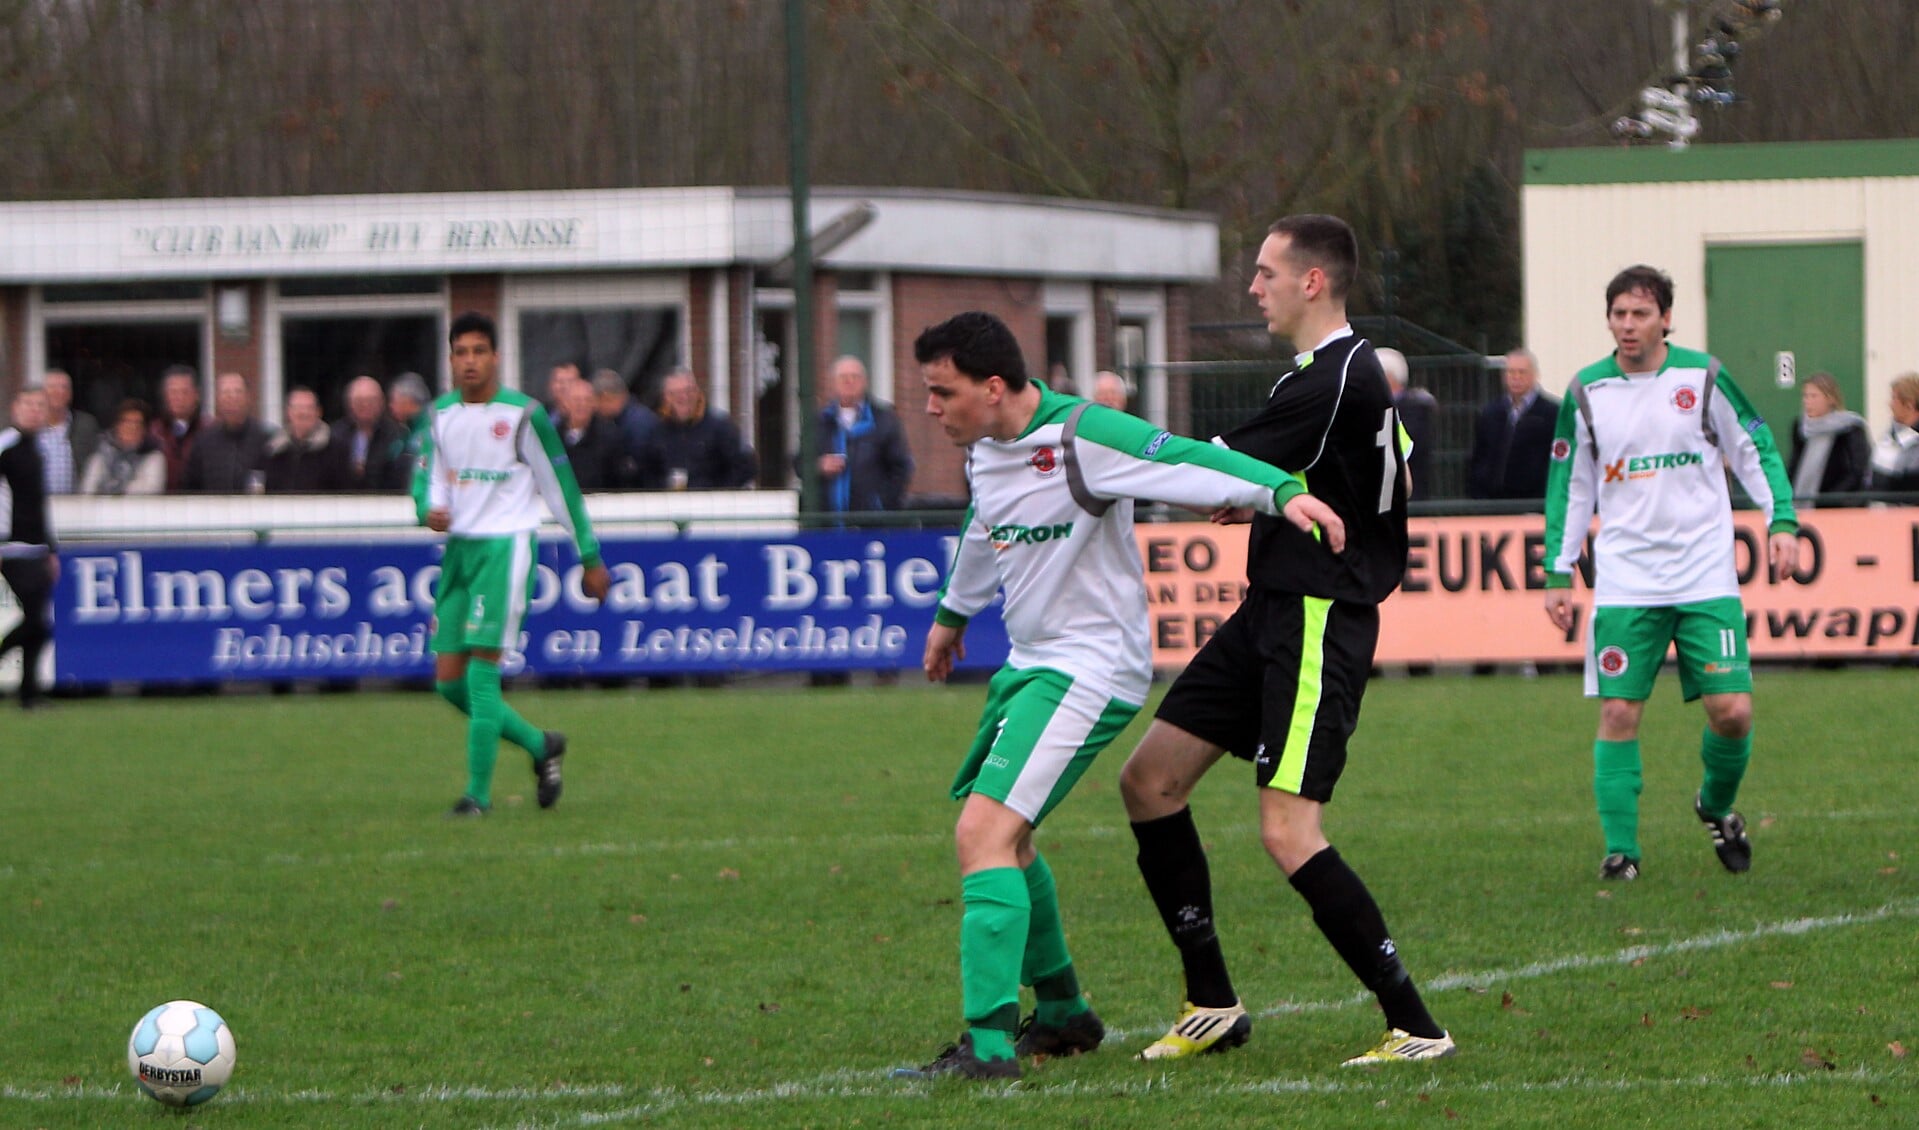 Bernisse was onverzettelijk tegen Rijnmond HS. Foto's: Peter de Jong.